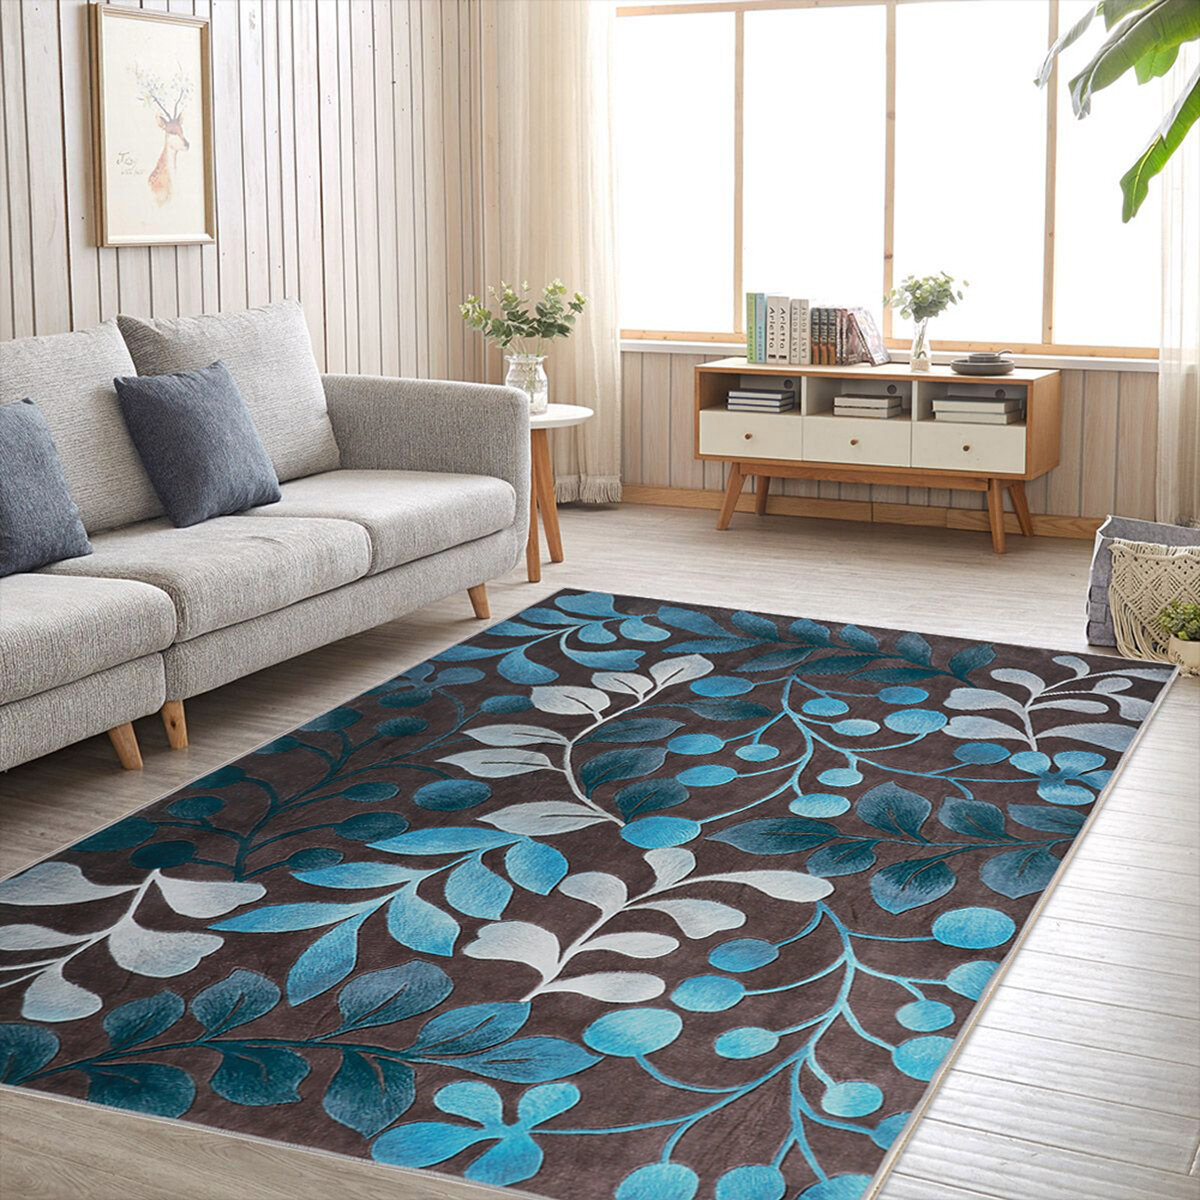 Plant Flowers Carpet Anti-skid Skin-friendly Carpet Non-slip Washable Floor Mat For Living Room Bedr